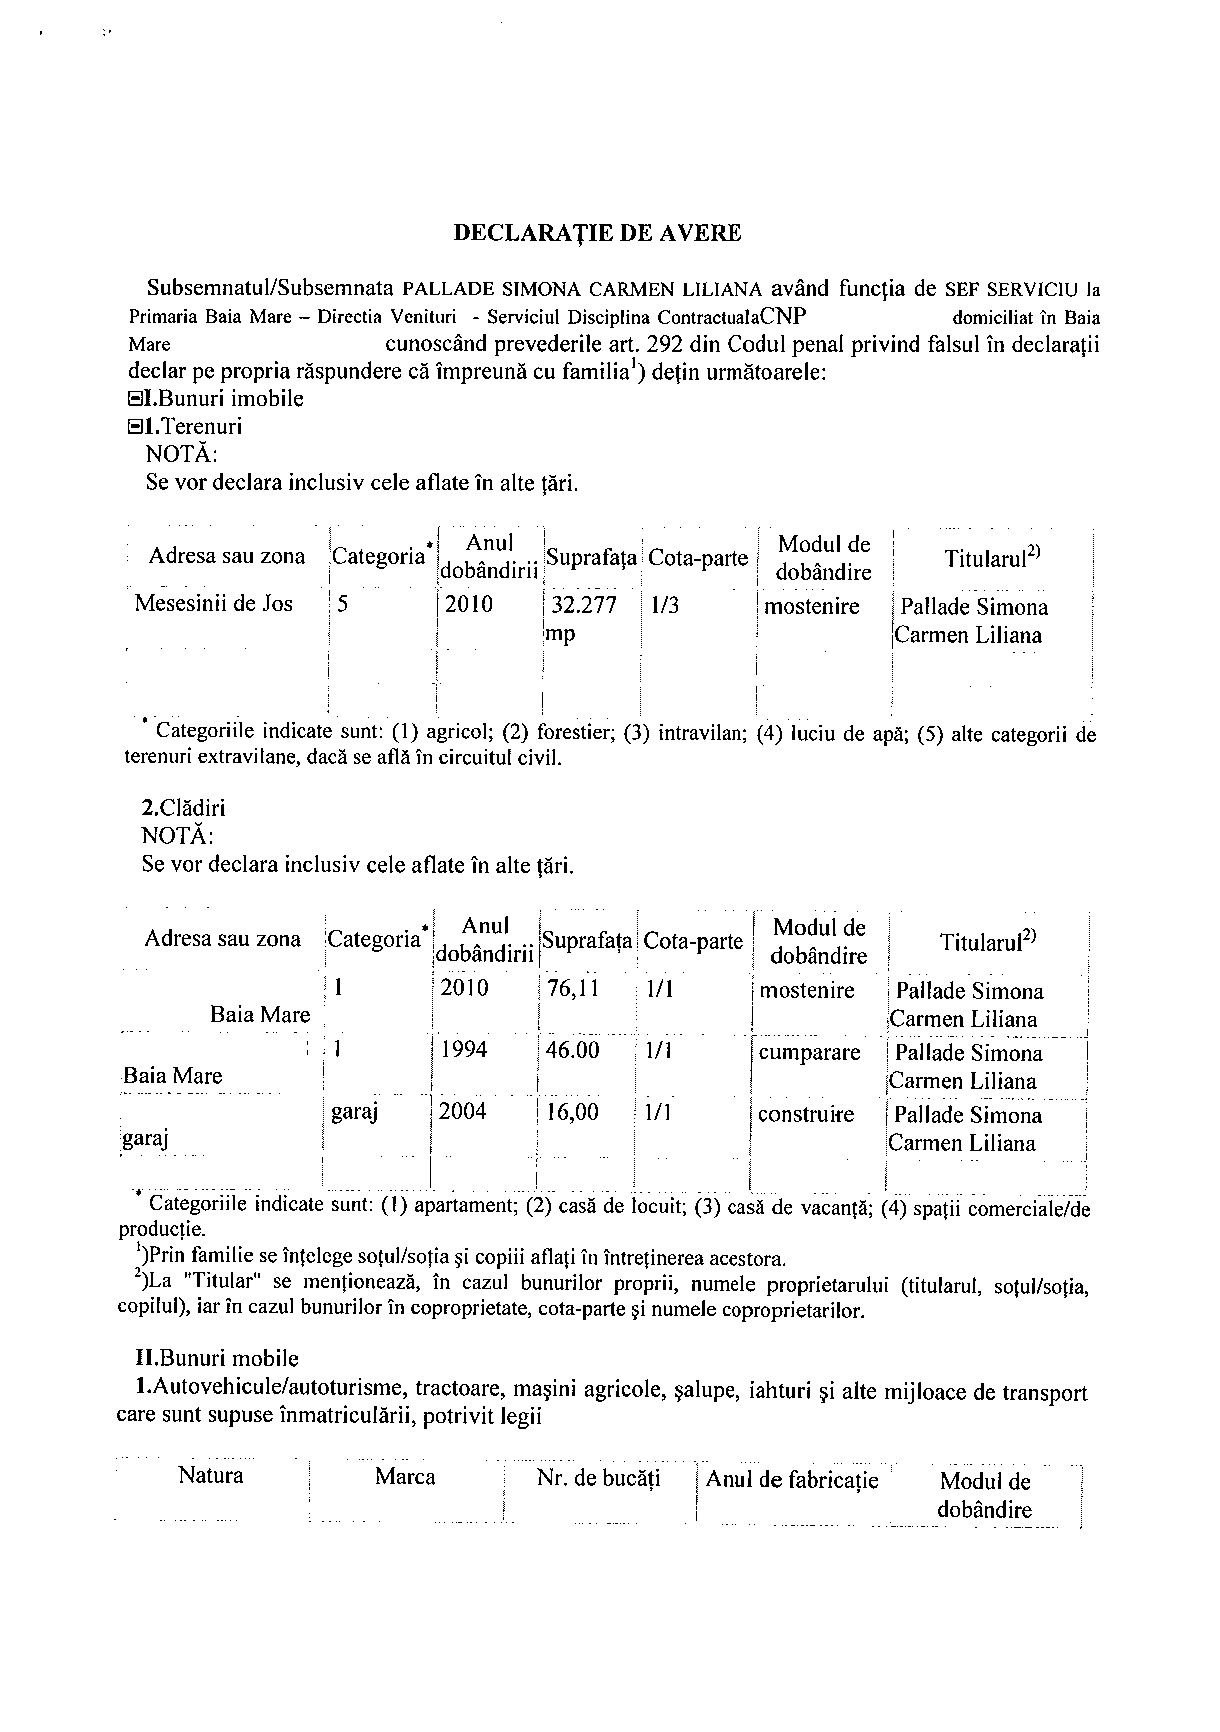 Declaratia de avere si de interese din data 12.07.2012 - pagina 1 din 6